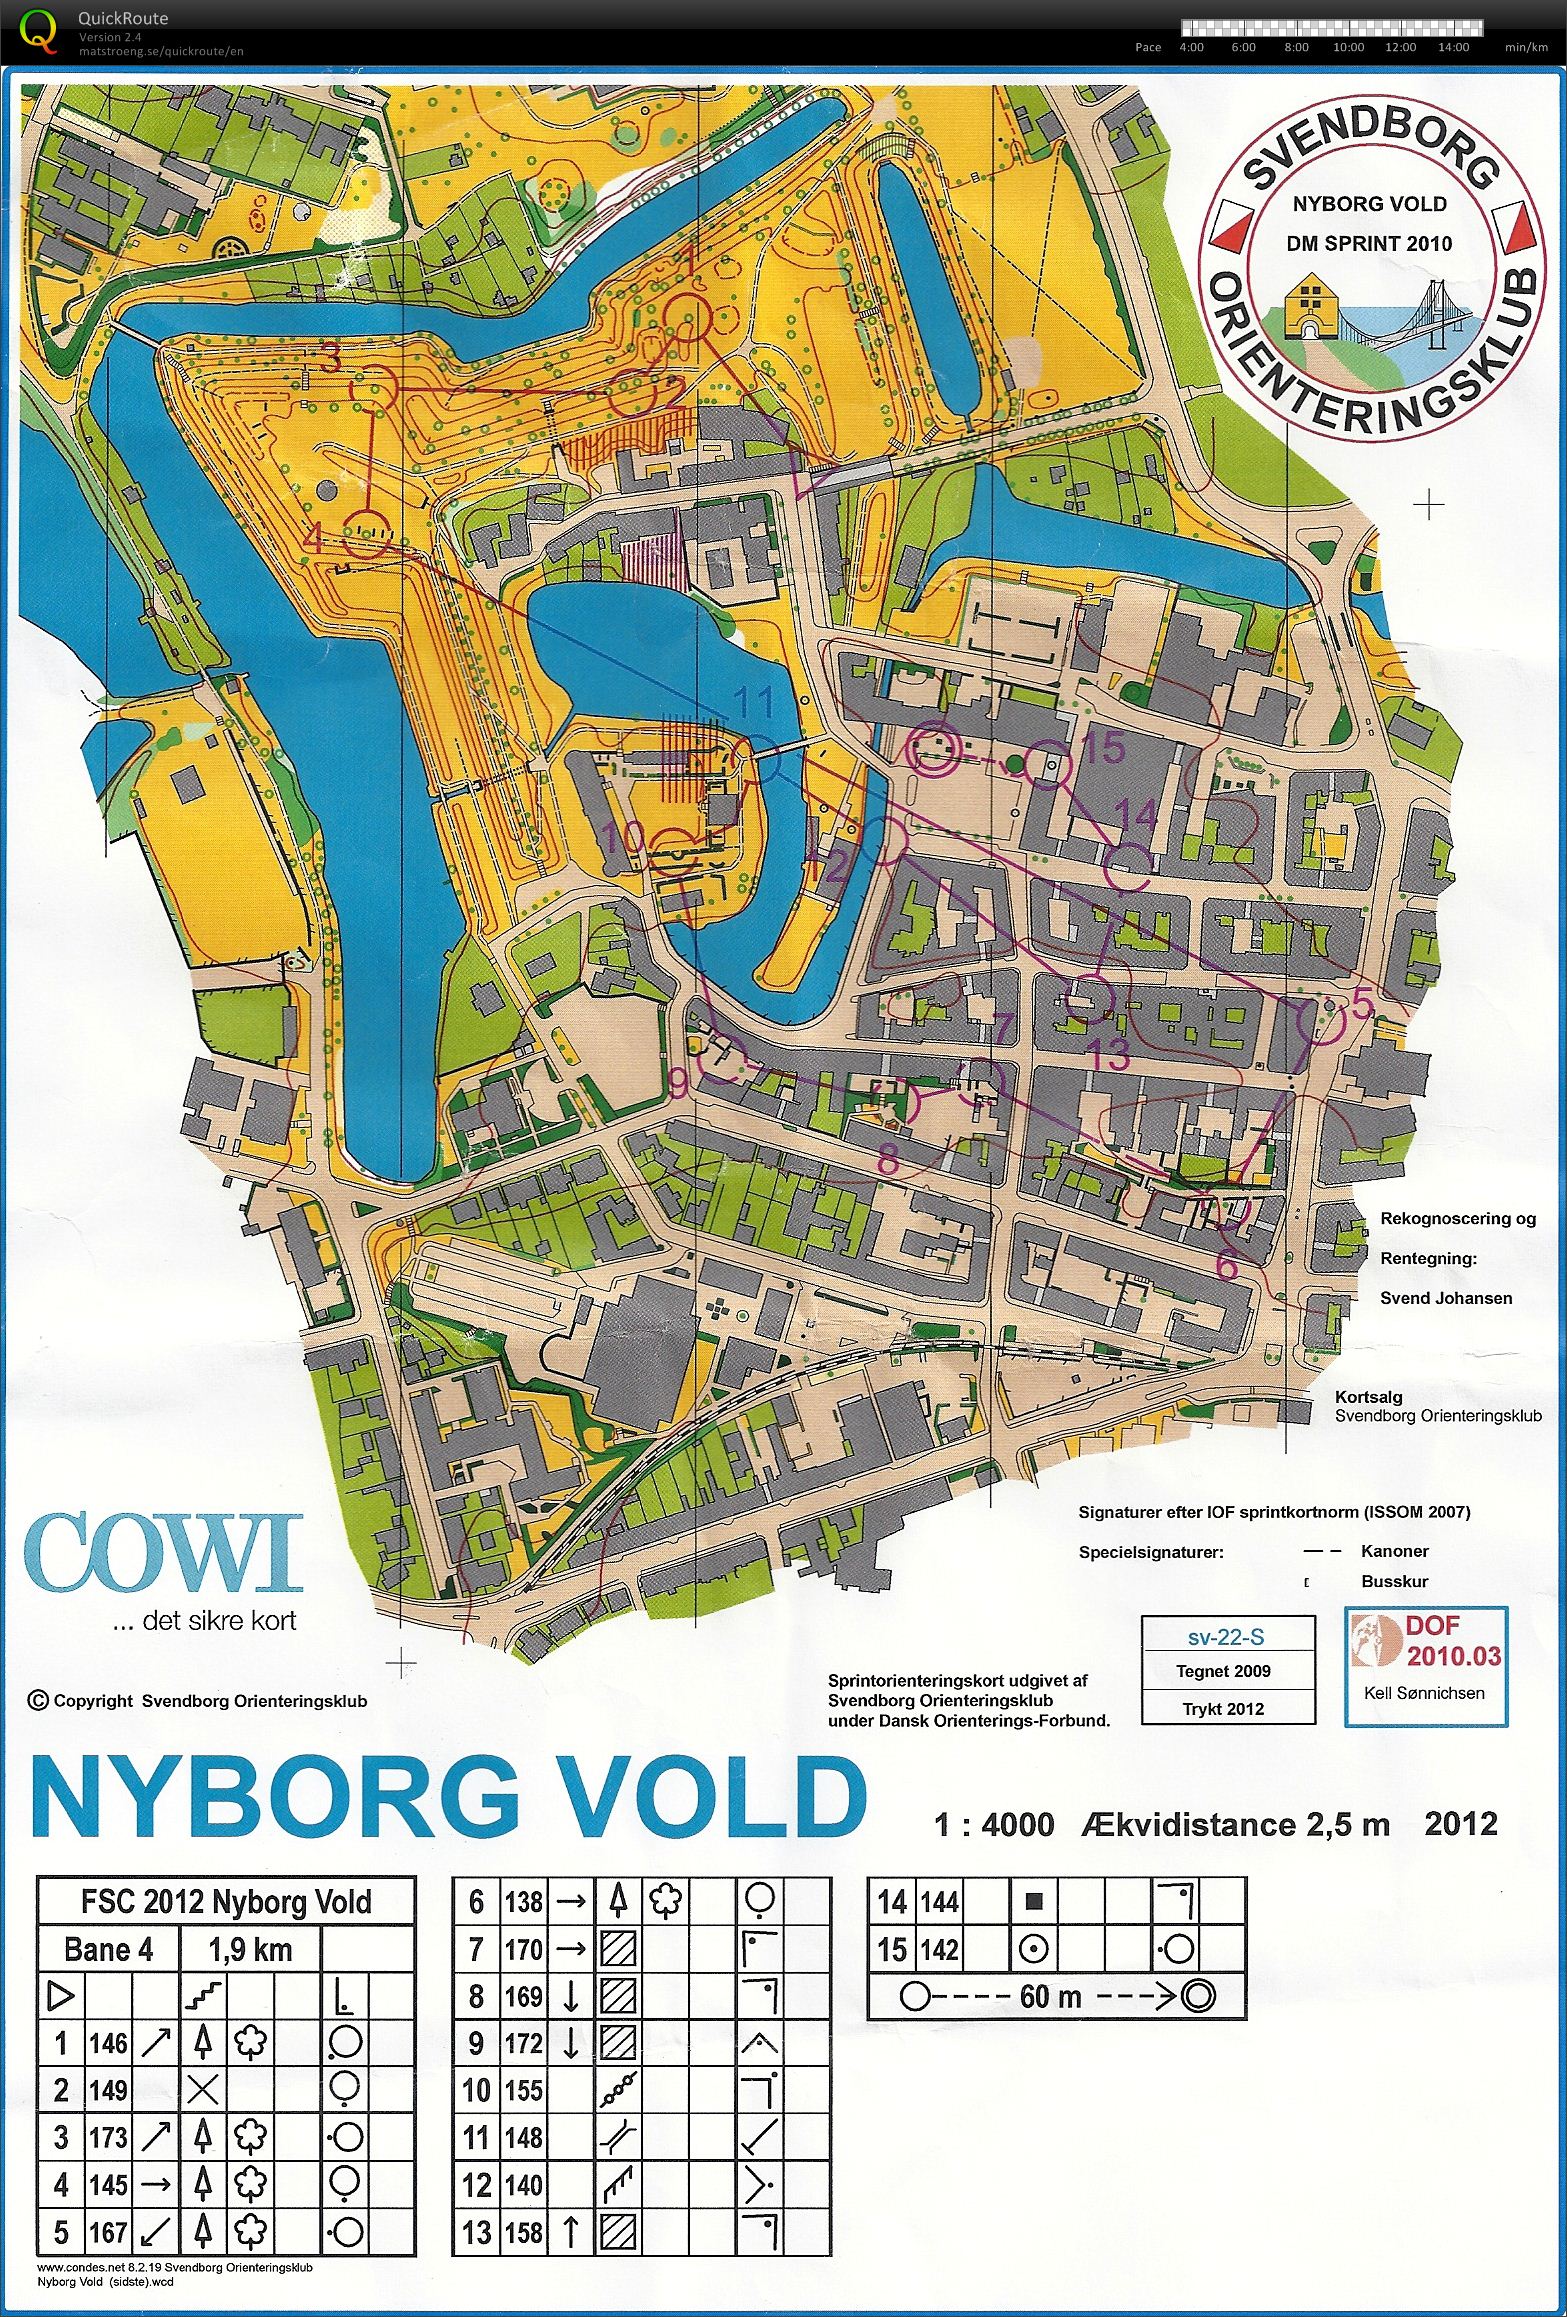 Nyborg Vold, Bane 4, D45, Lene S.N. (2012-05-28)